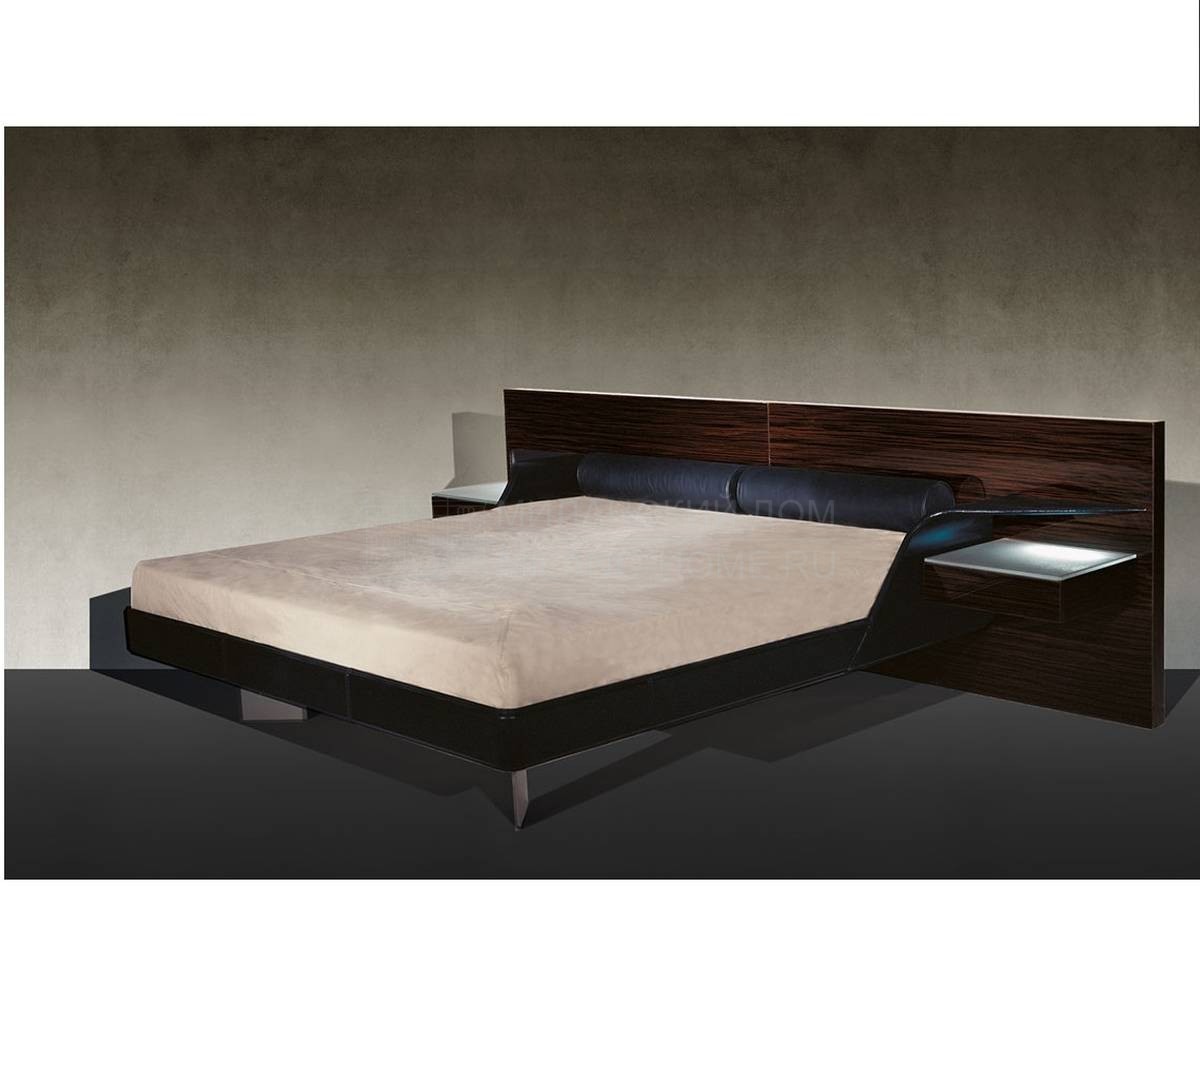 Кровать с деревянным изголовьем Aliante из Италии фабрики REFLEX ANGELO